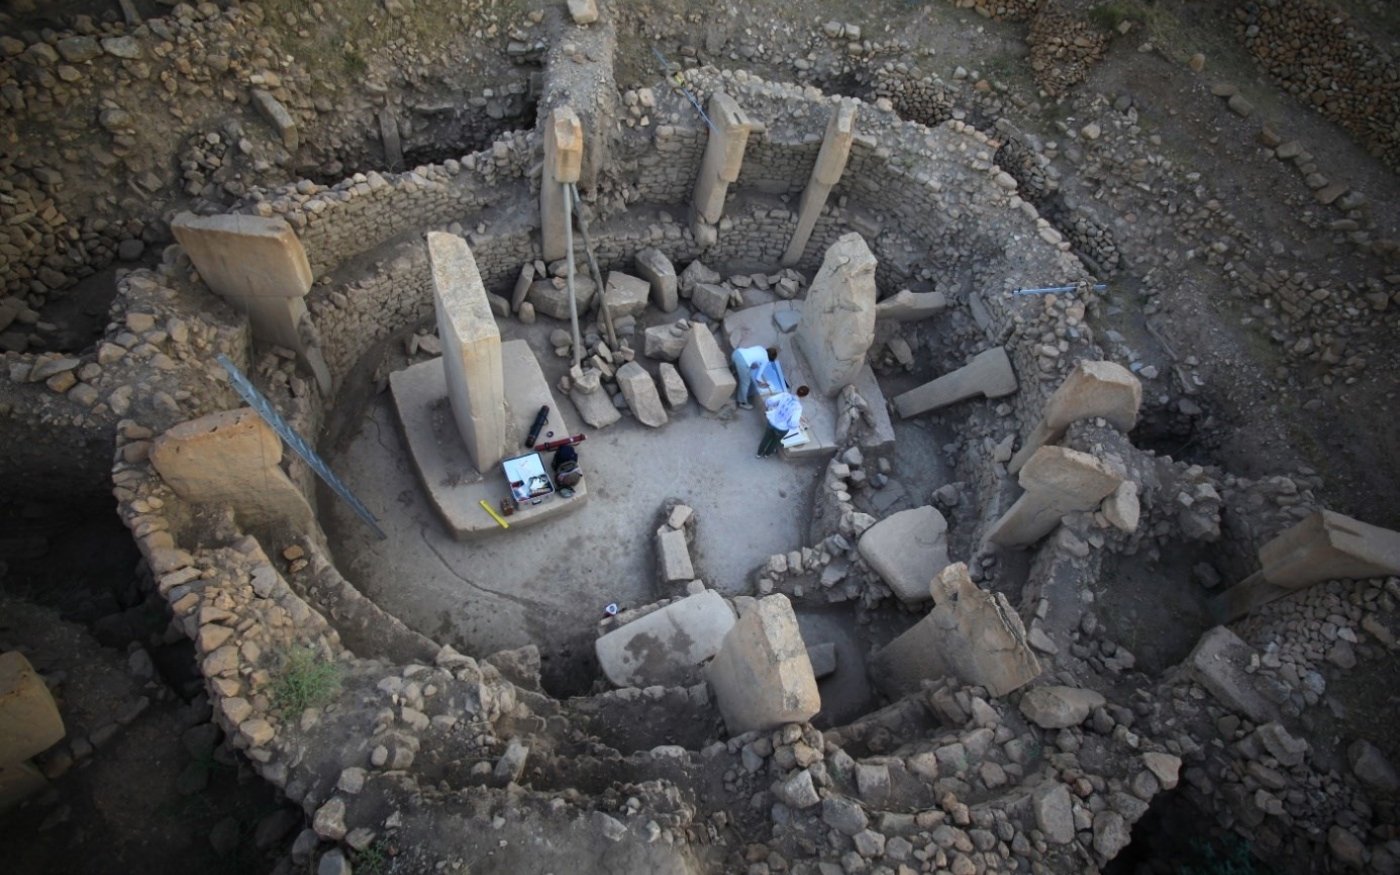 Göbekli Tepe présente la « plus importante collection au monde d’objets du néolithique », assure son directeur Celal Uludağ (UNESCO/DAI, Göbekli Tepe Project)